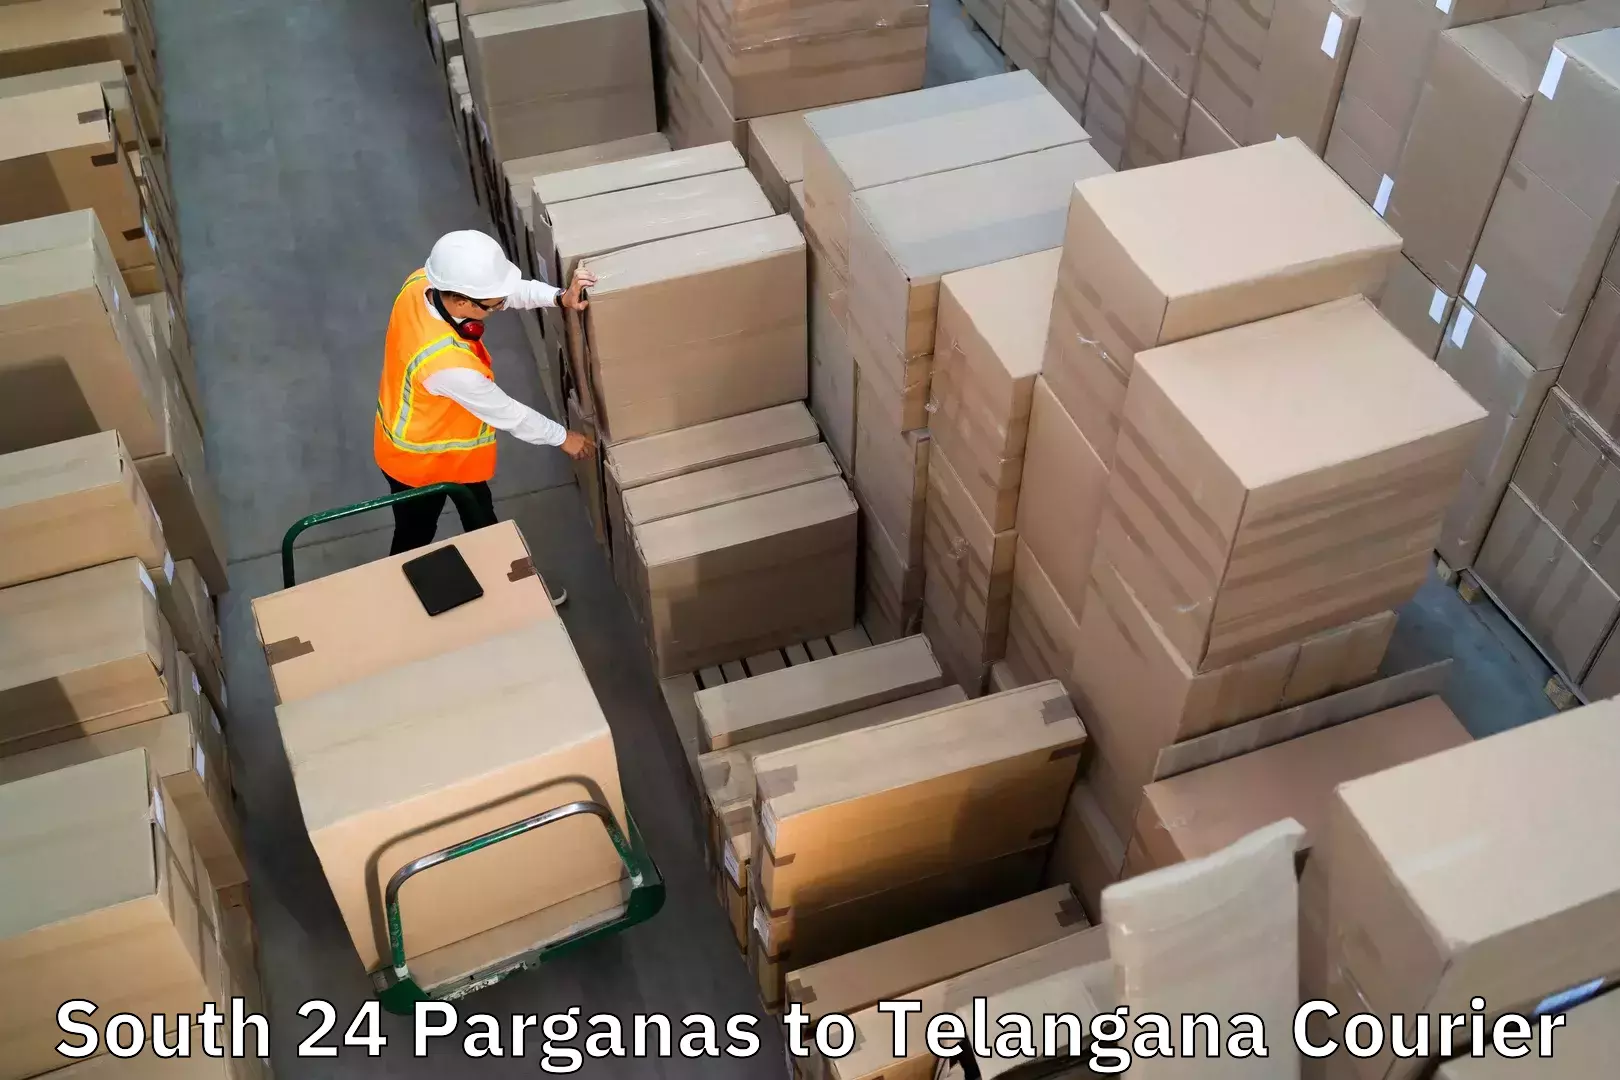 Luggage dispatch service South 24 Parganas to Sikanderguda